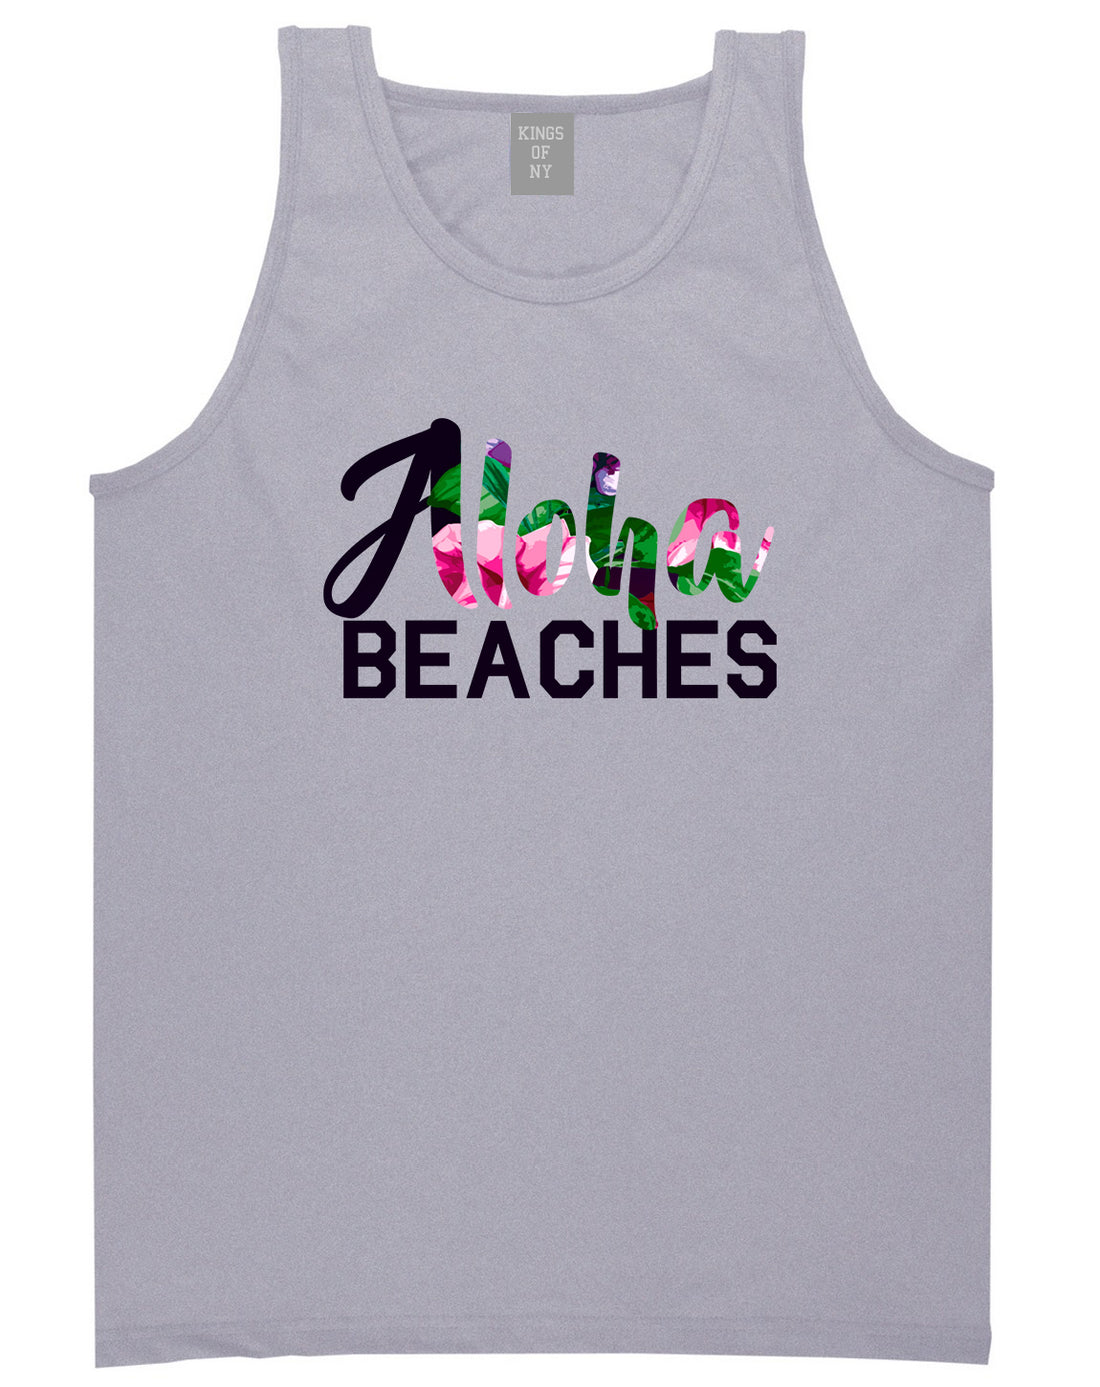 Aloha Beaches Grey Tank Top Shirt by Kings Of NY